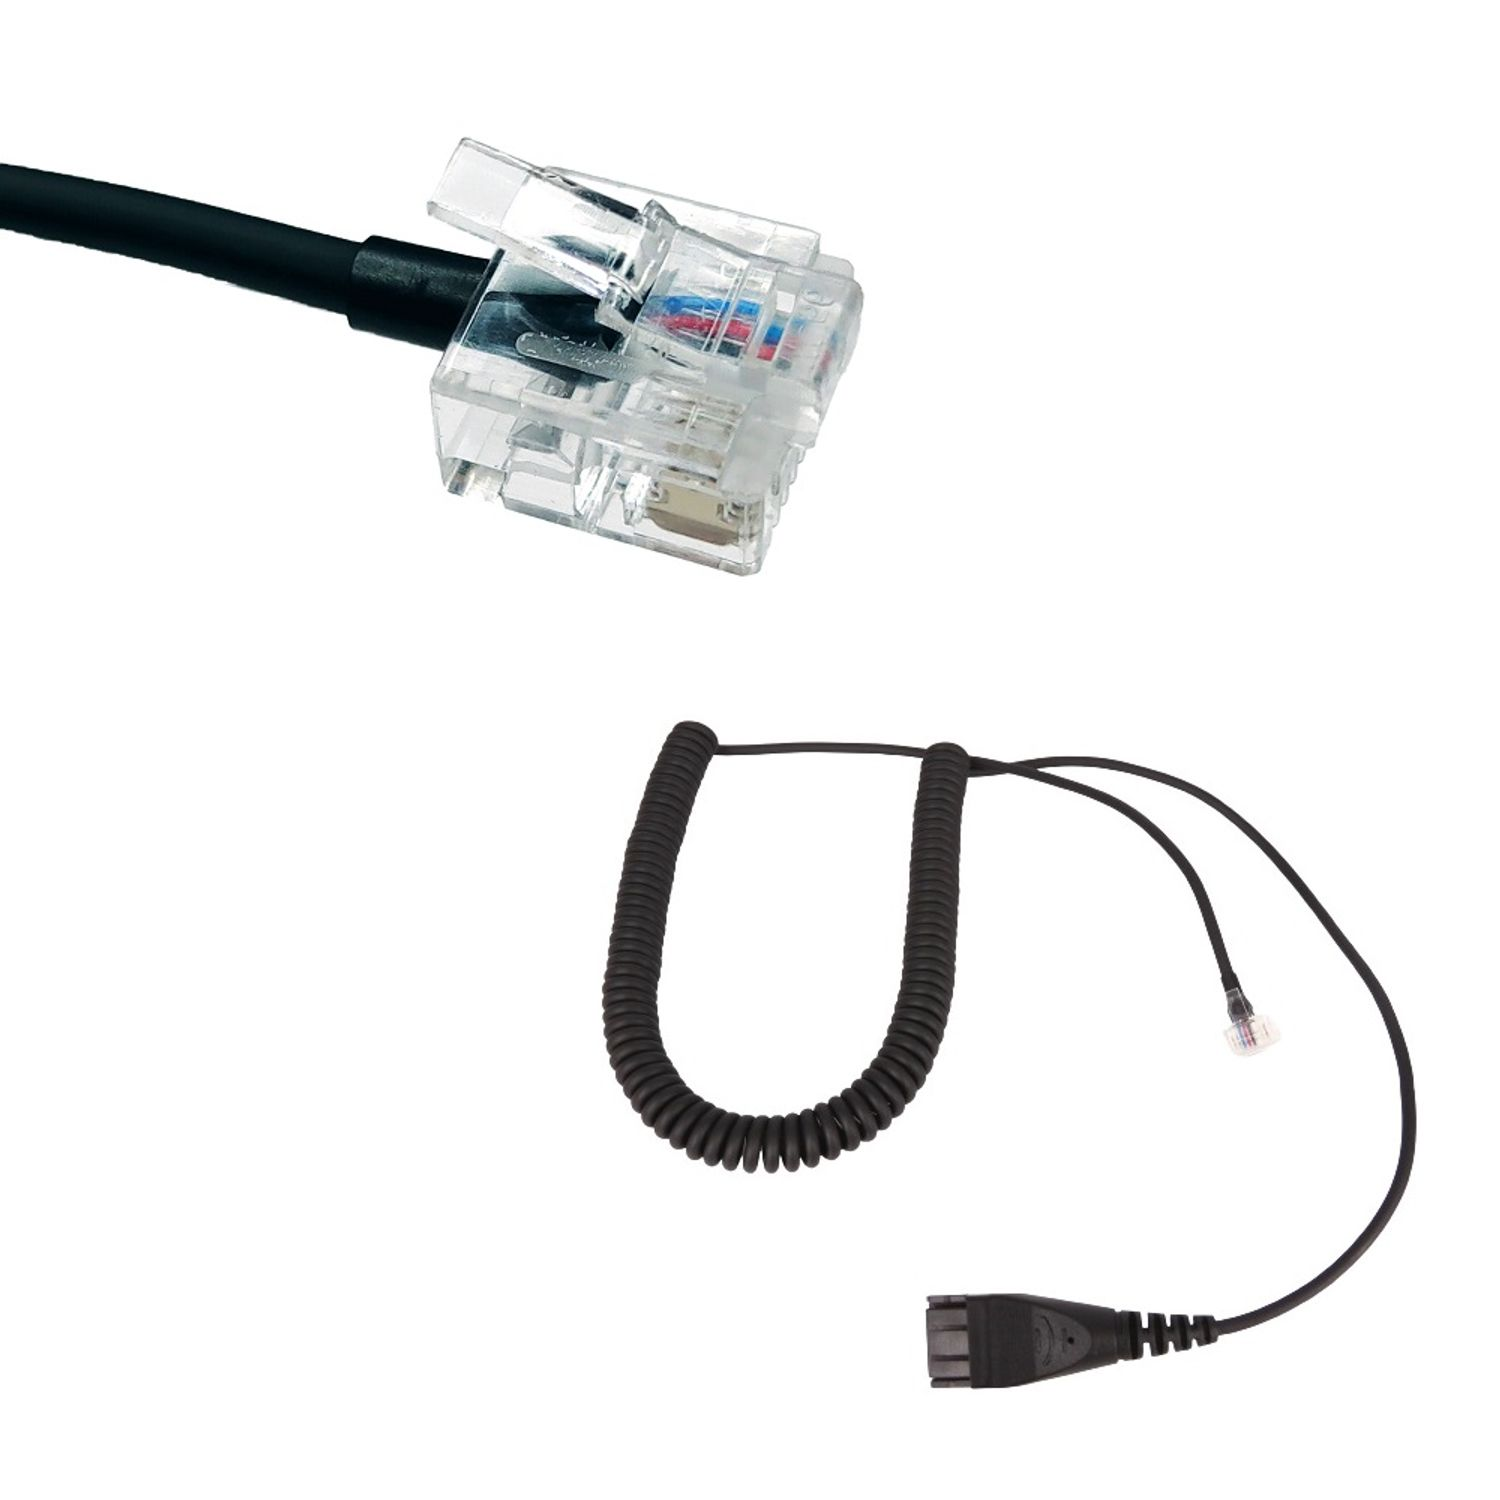 Zubehör Unify OpenScape Telefon OpenStage, kompatibel GEQUDIO Headset für RJ-Kabel mit Schwarz